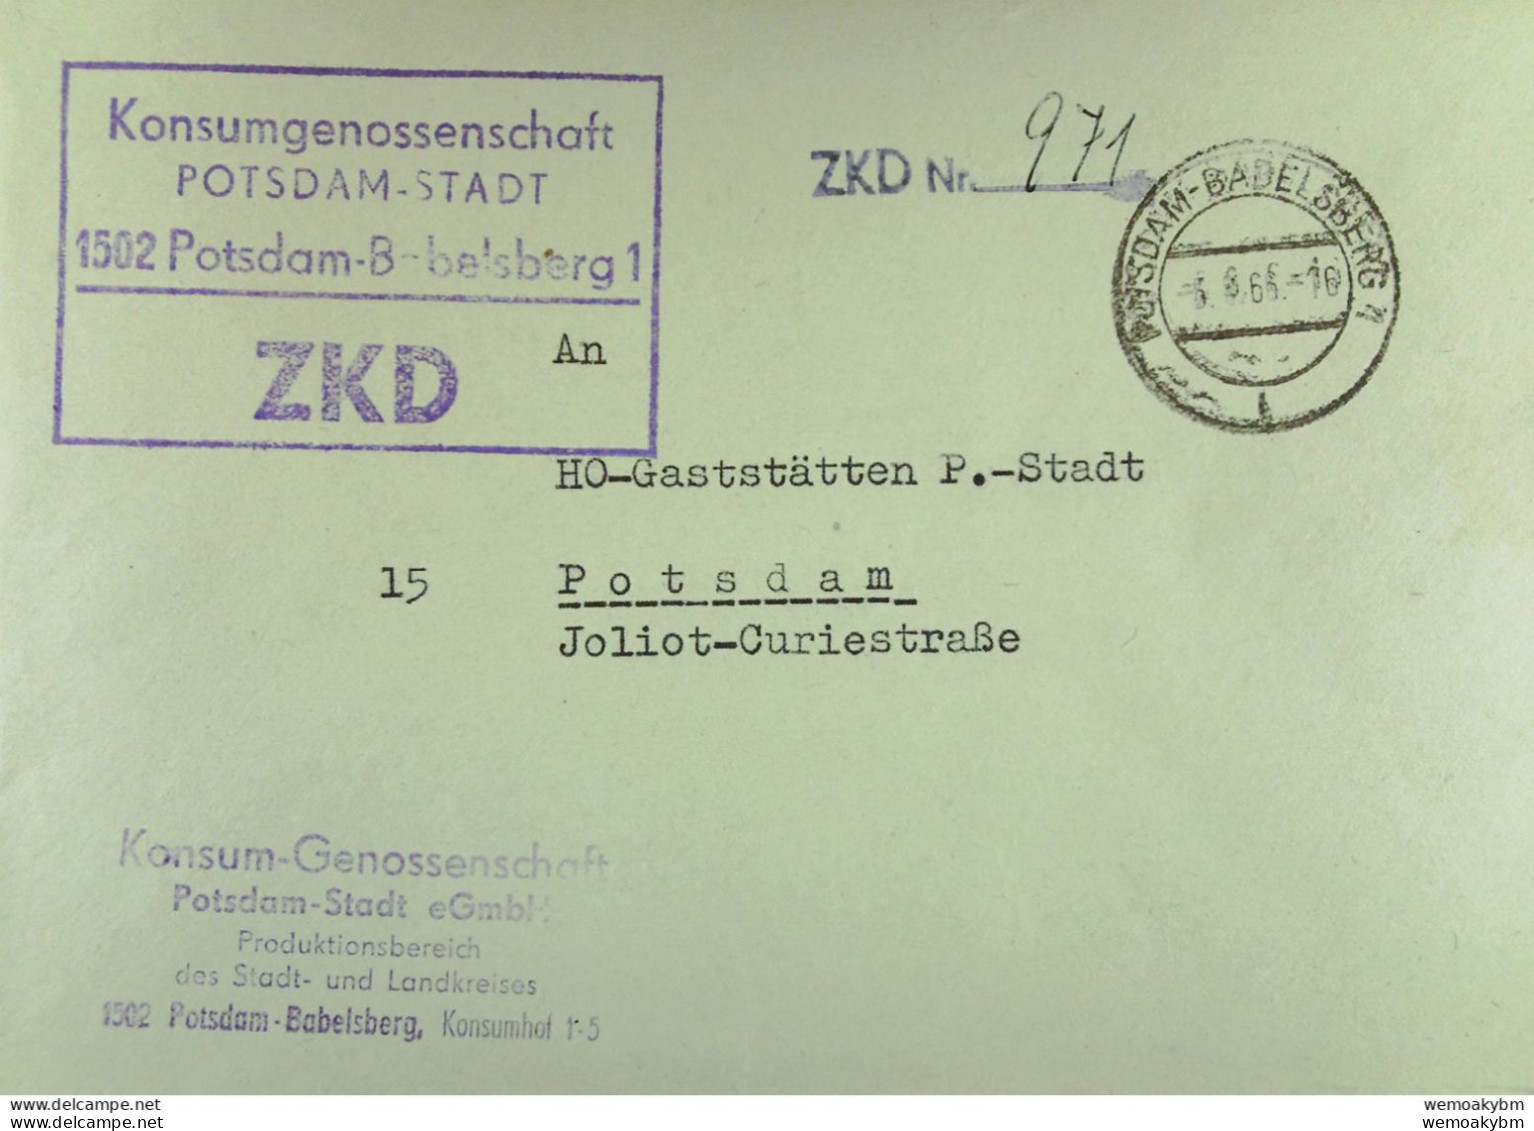 Orts-Brief Mit ZKD-Kastenstpl. "Konsum-Genossenschaft P-Stadt 1502 Potsdam-Babelsberg1" Vom 5.8.66 An HO Potsdam-Stadt - Servicio Central De Correos